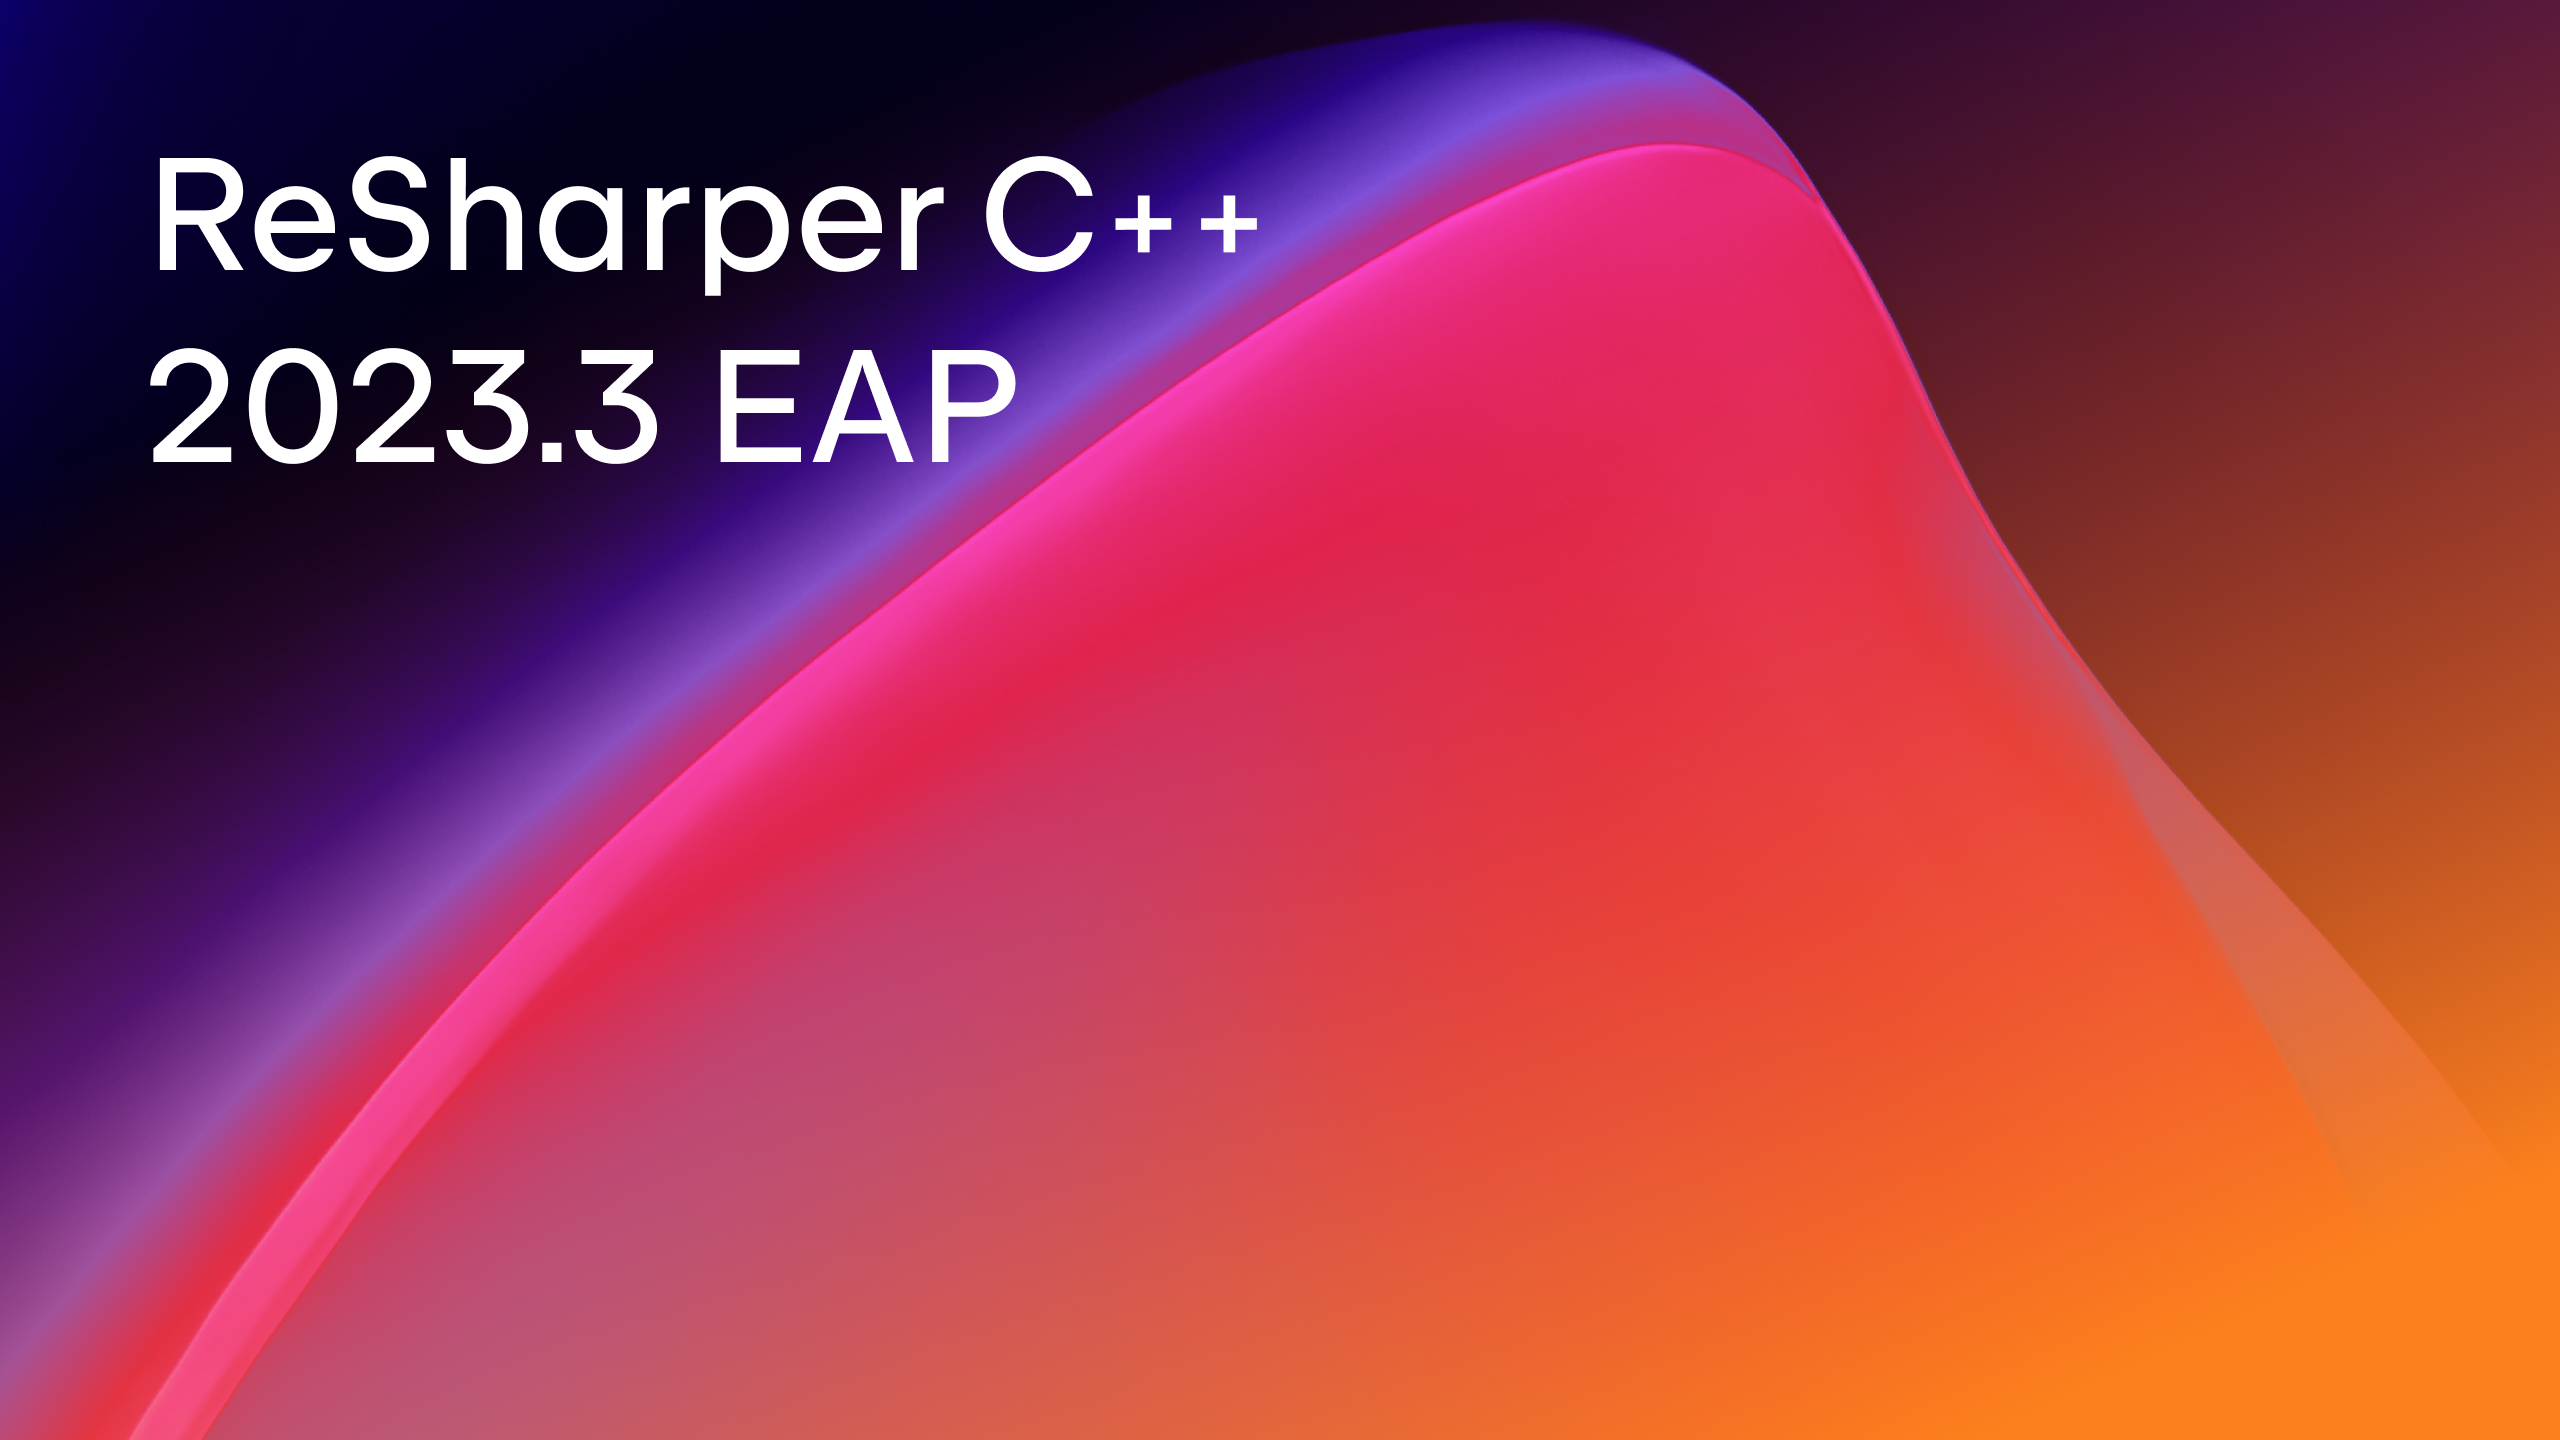 ReSharper C++ 2023.3 EAP